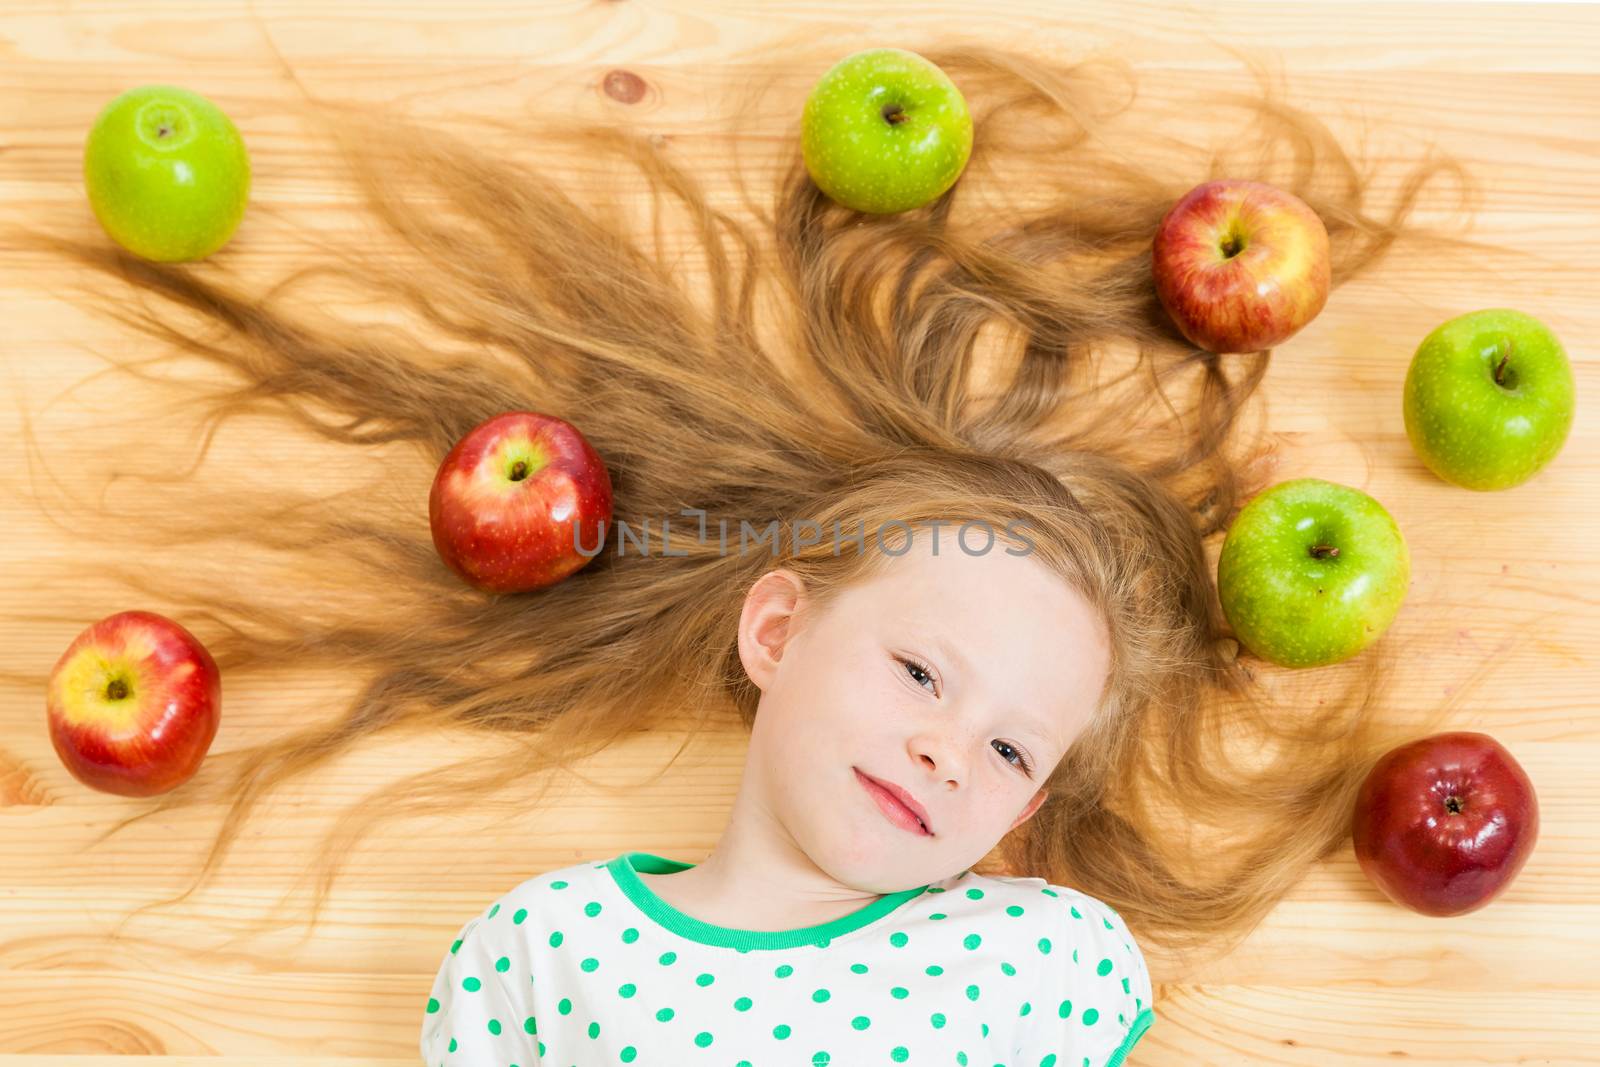 the little girl among apples by sveter